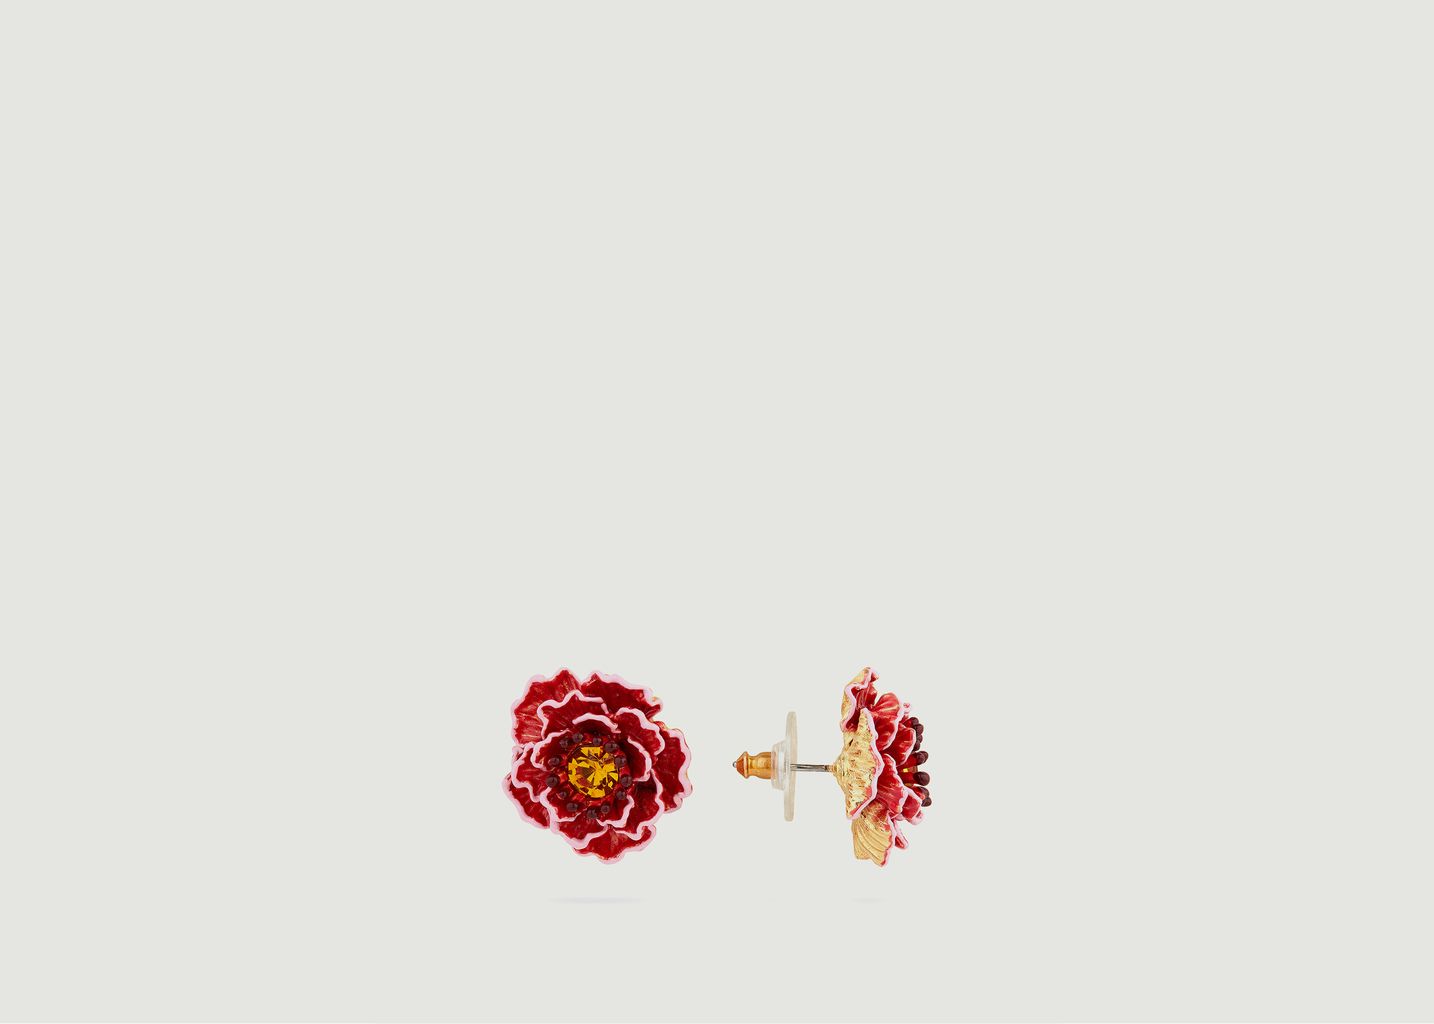 Peach blossom earrings - Les Néréides